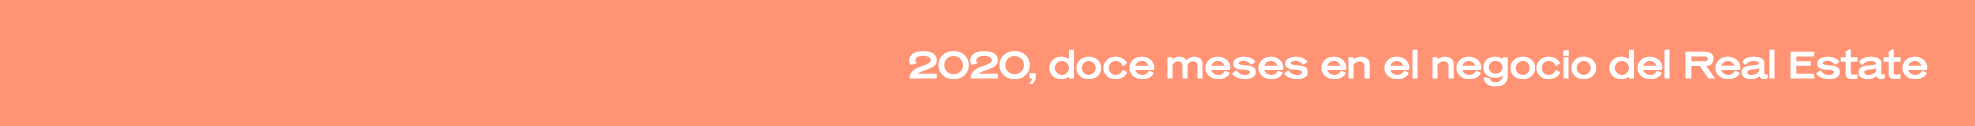 Especial 2020: el negocio del ‘real estate’ en el año del Covid-19